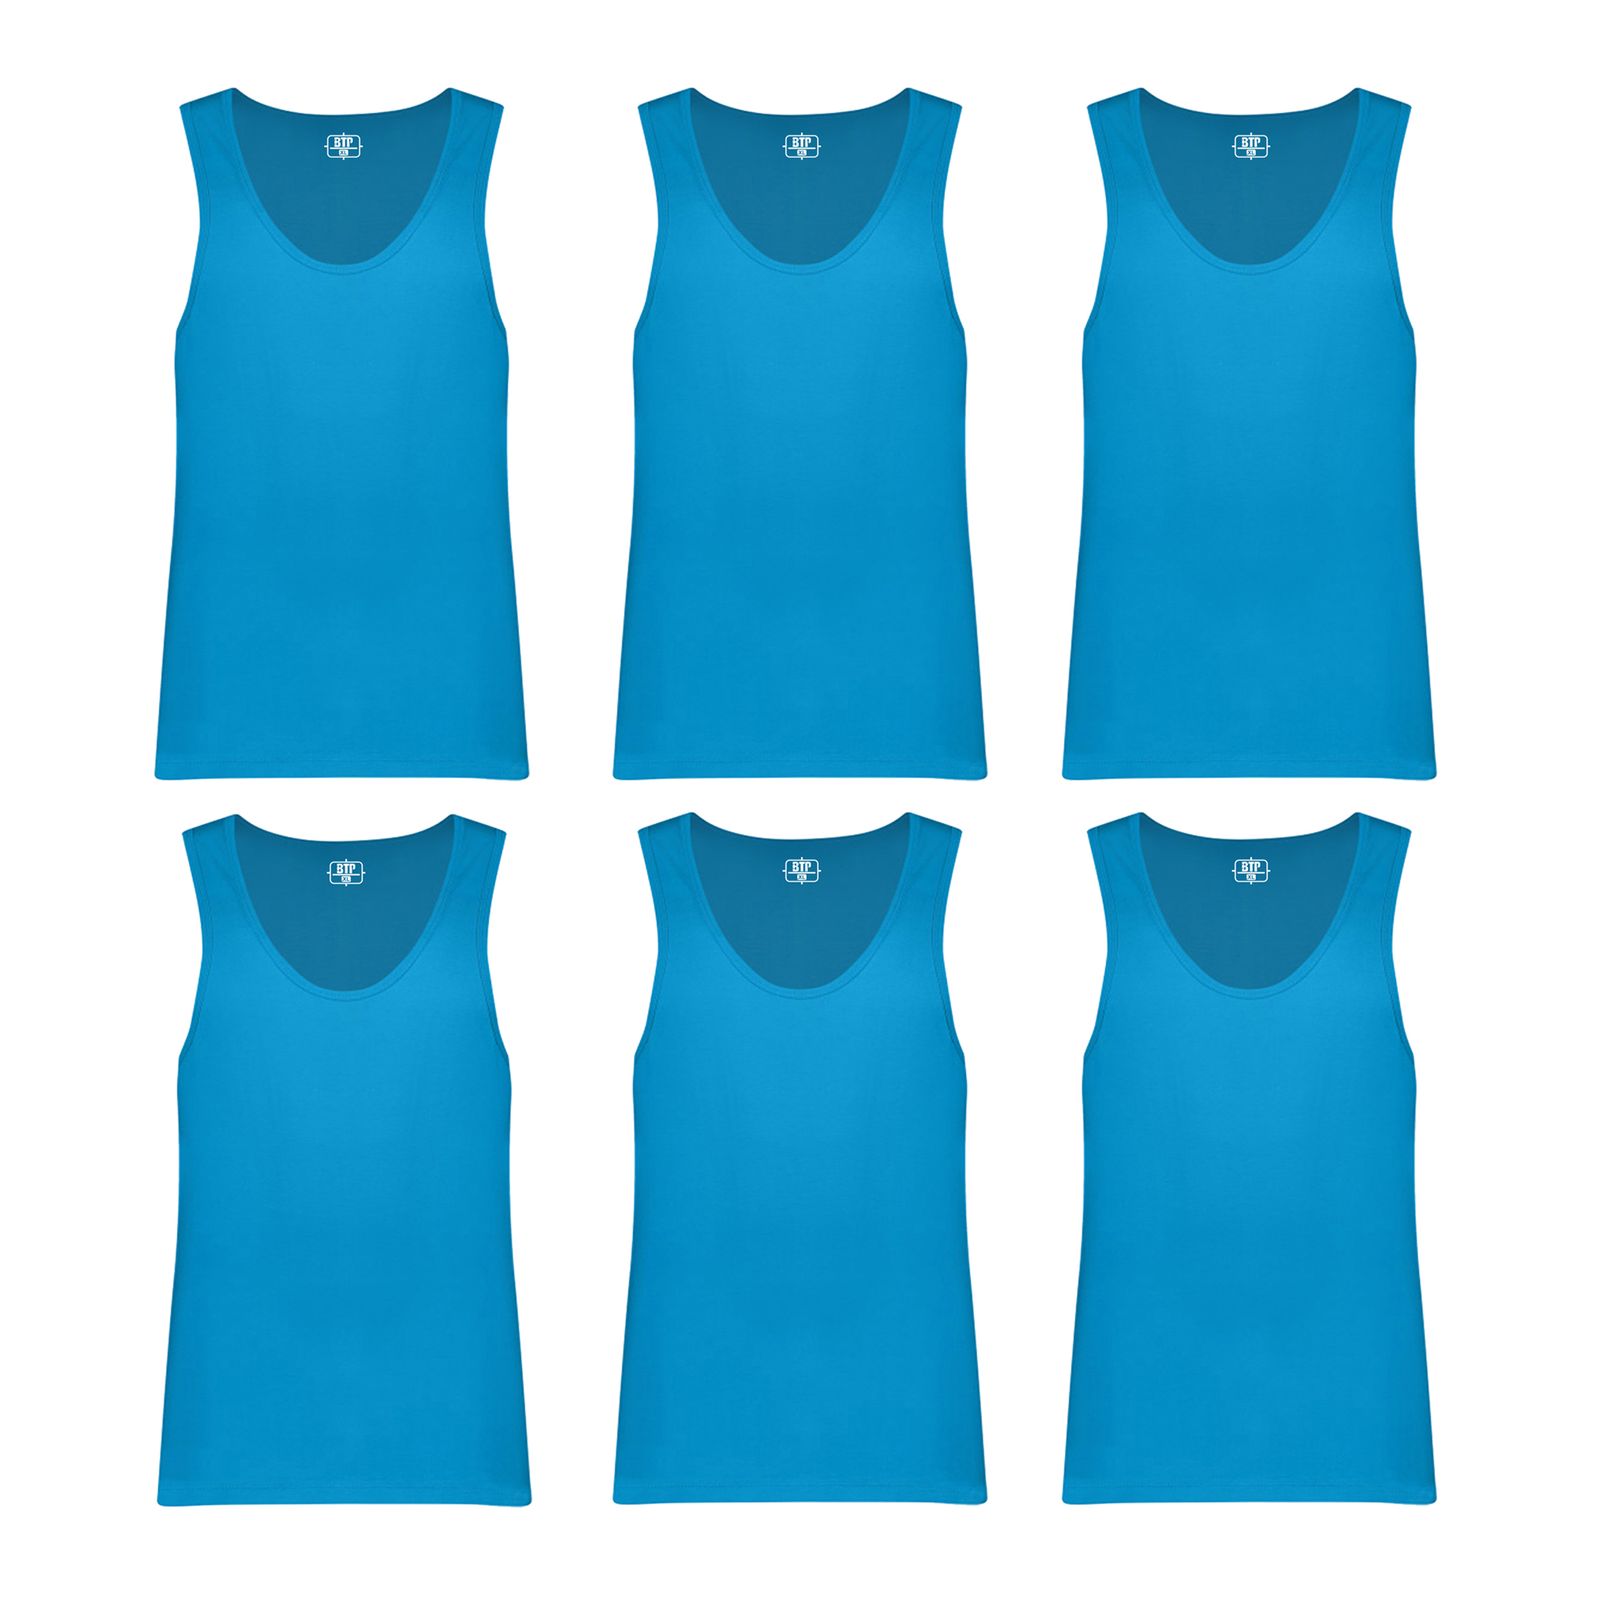 زیرپوش رکابی مردانه برهان تن پوش مدل 3-01 رنگ آبی فیروزه ای بسته 6 عددی -  - 1